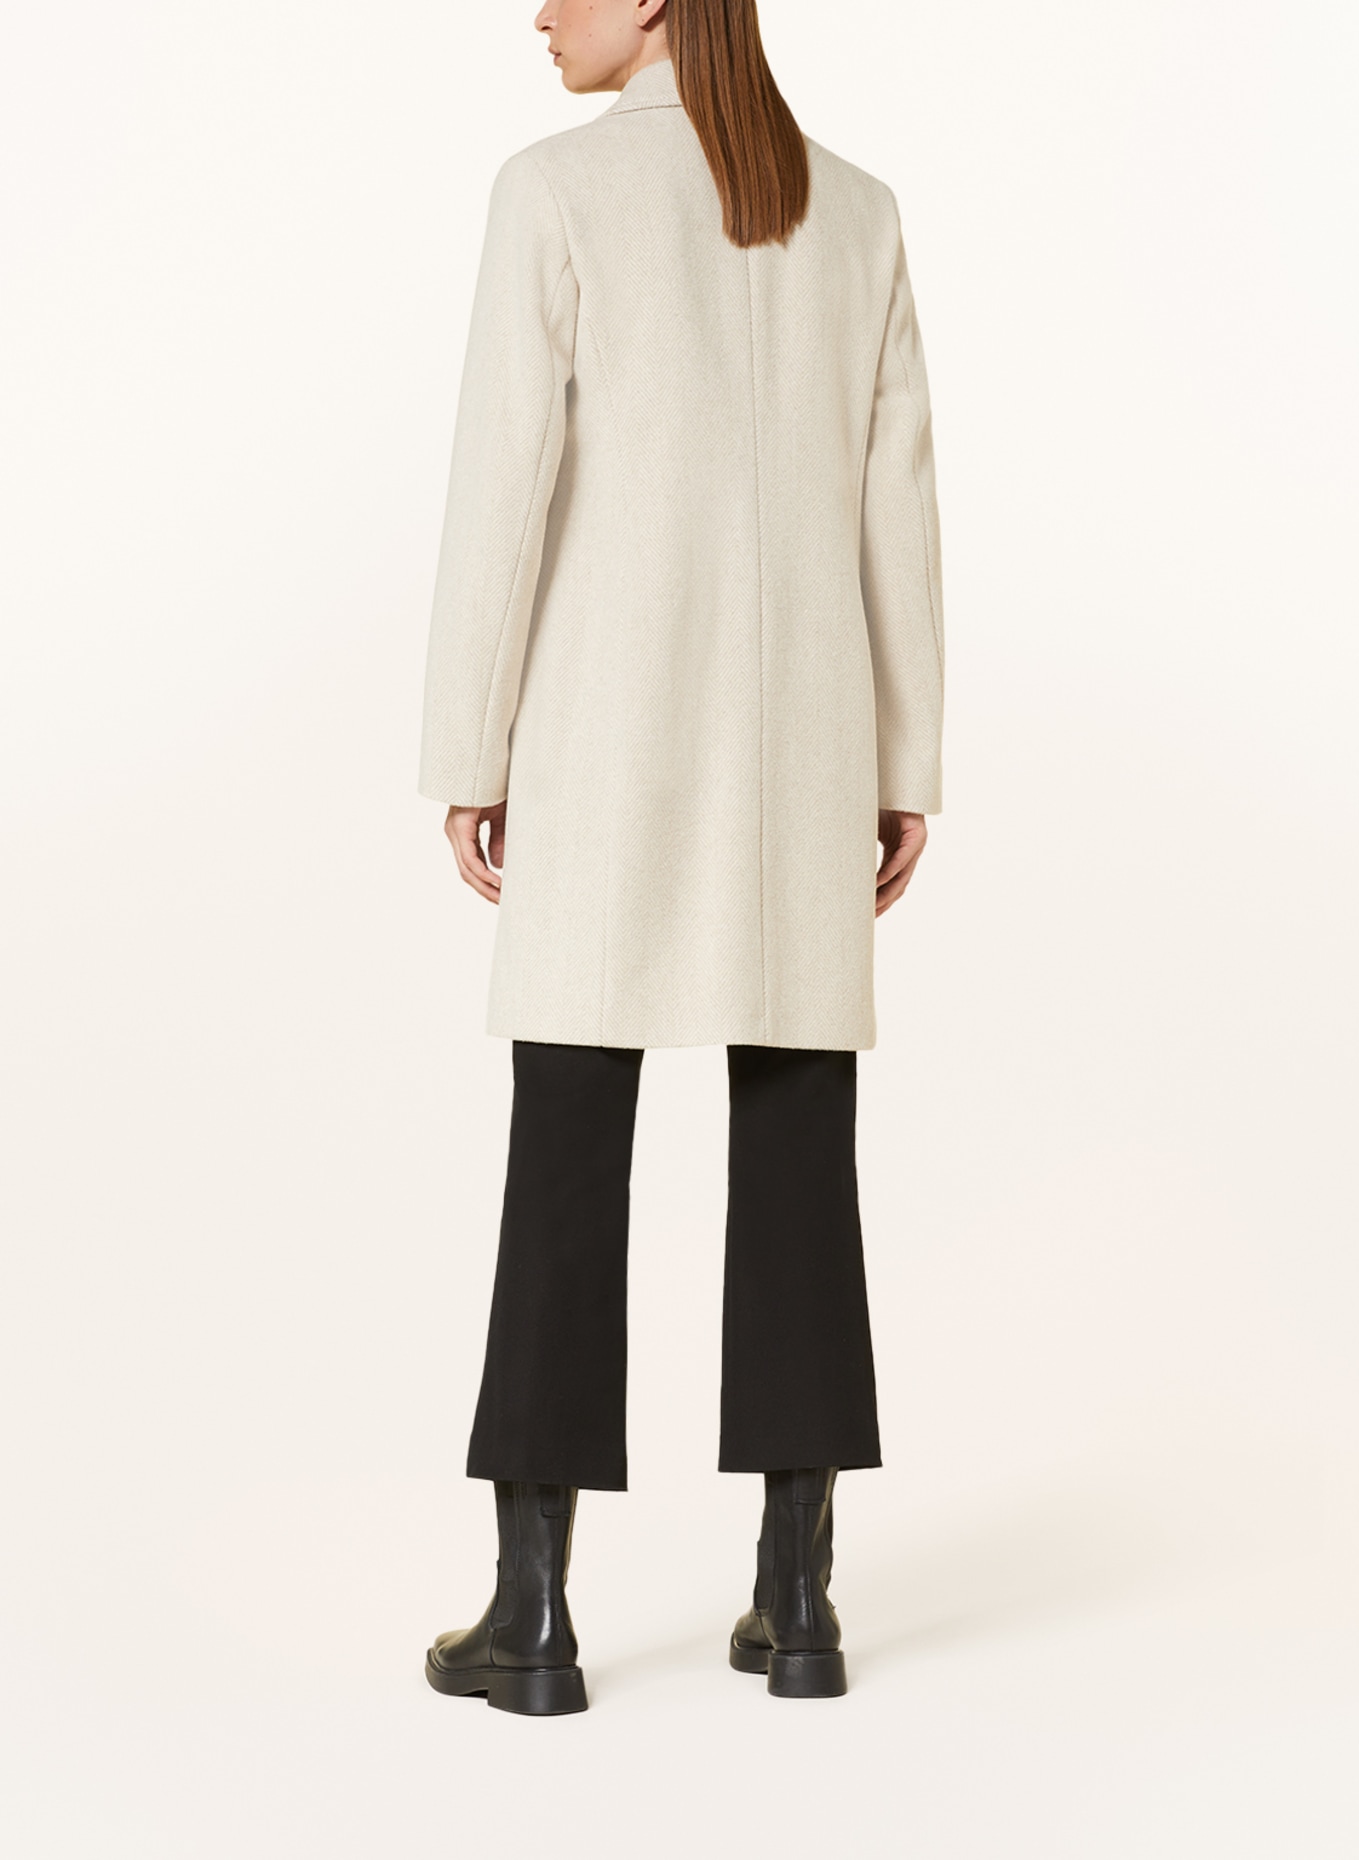 FUCHS SCHMITT Wool coat, Color: BEIGE/ CREAM (Image 3)